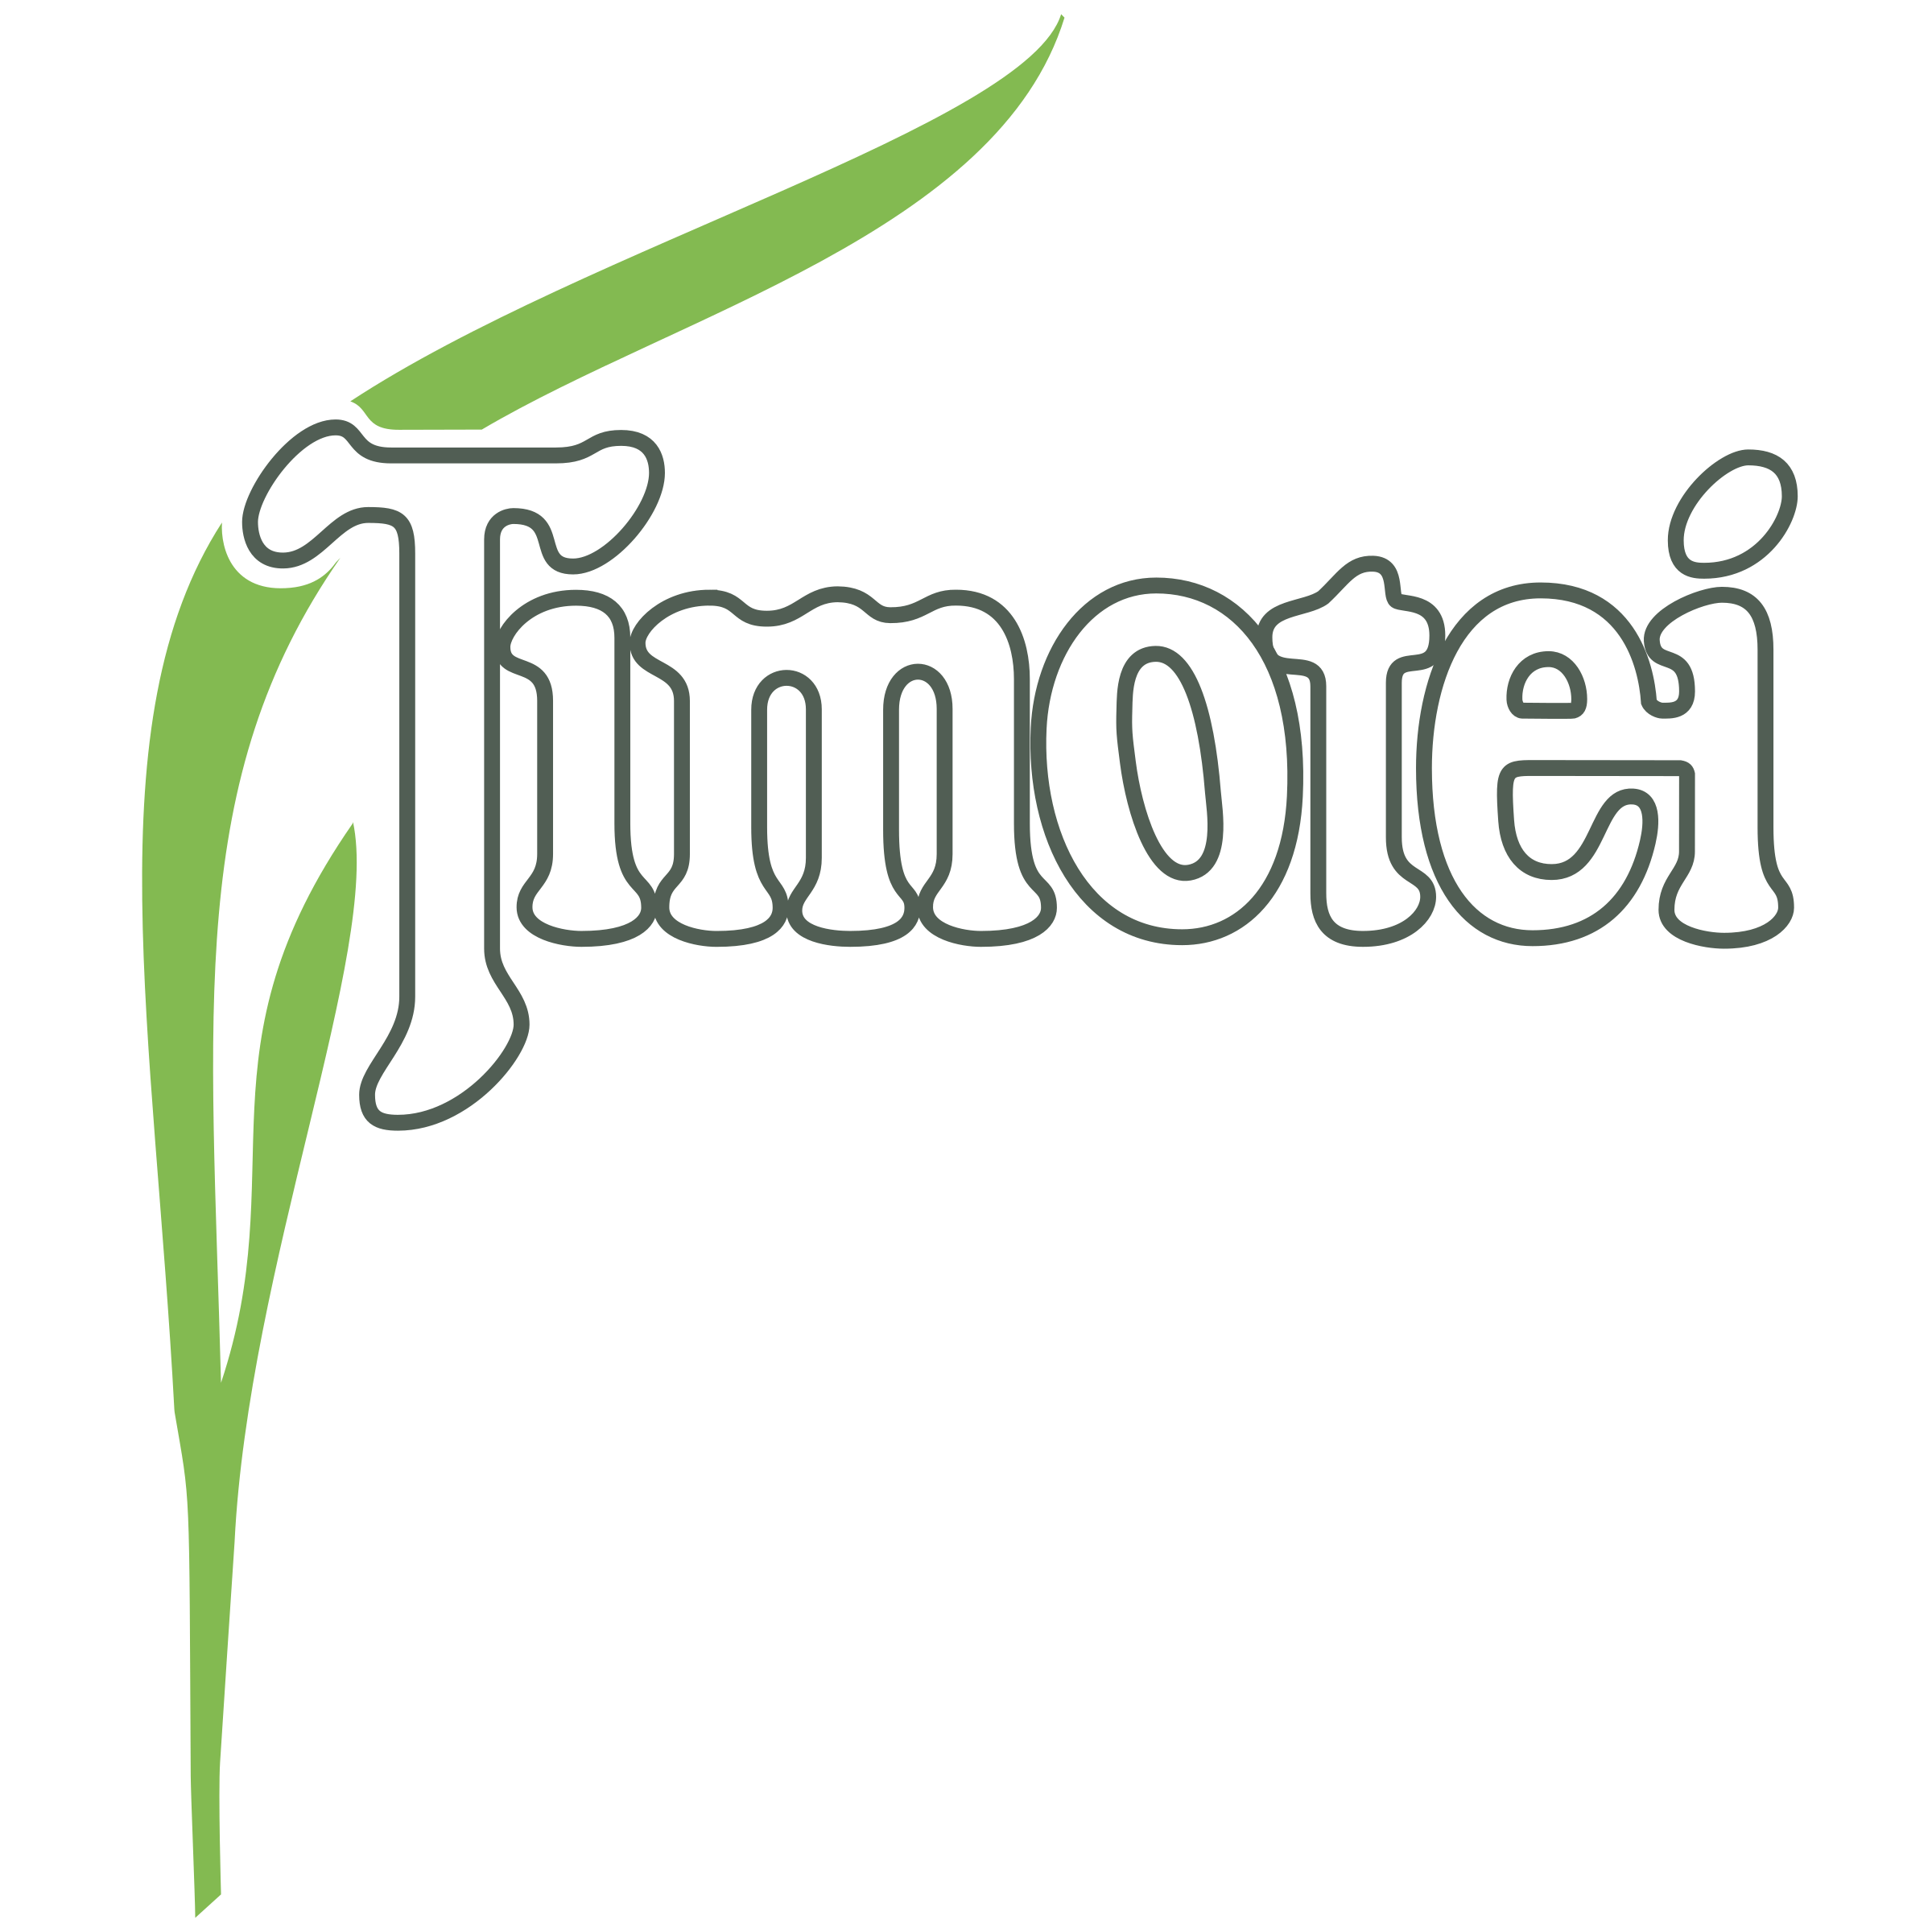 Timotei Logo - Timotei Logo PNG Transparent & SVG Vector - Freebie Supply